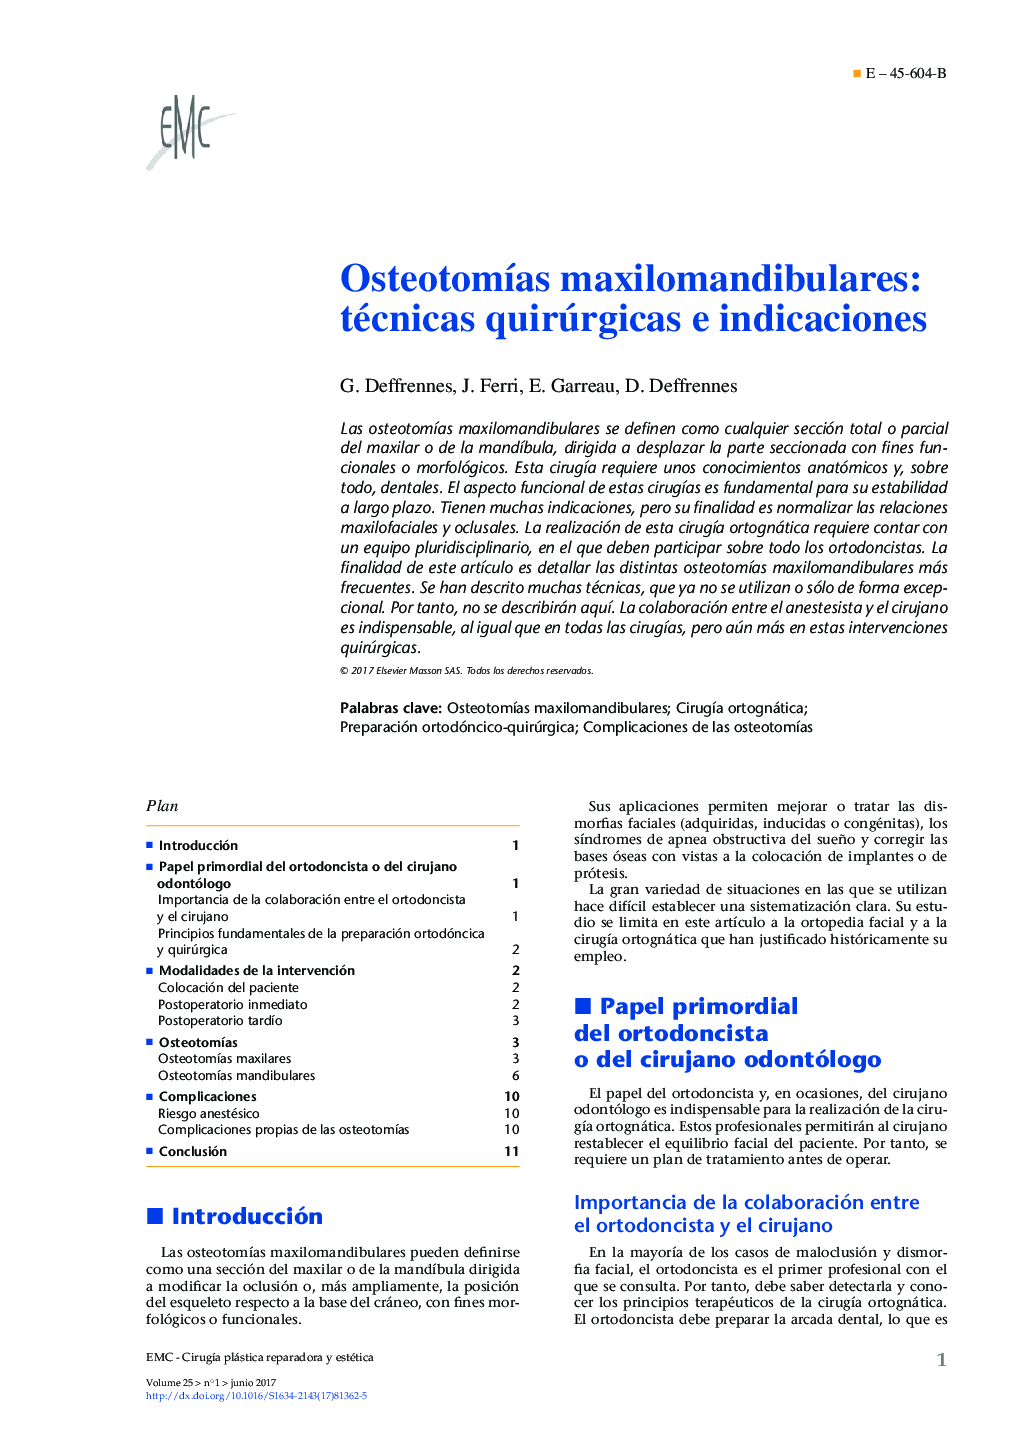 OsteotomÃ­as maxilomandibulares: técnicas quirúrgicas e indicaciones